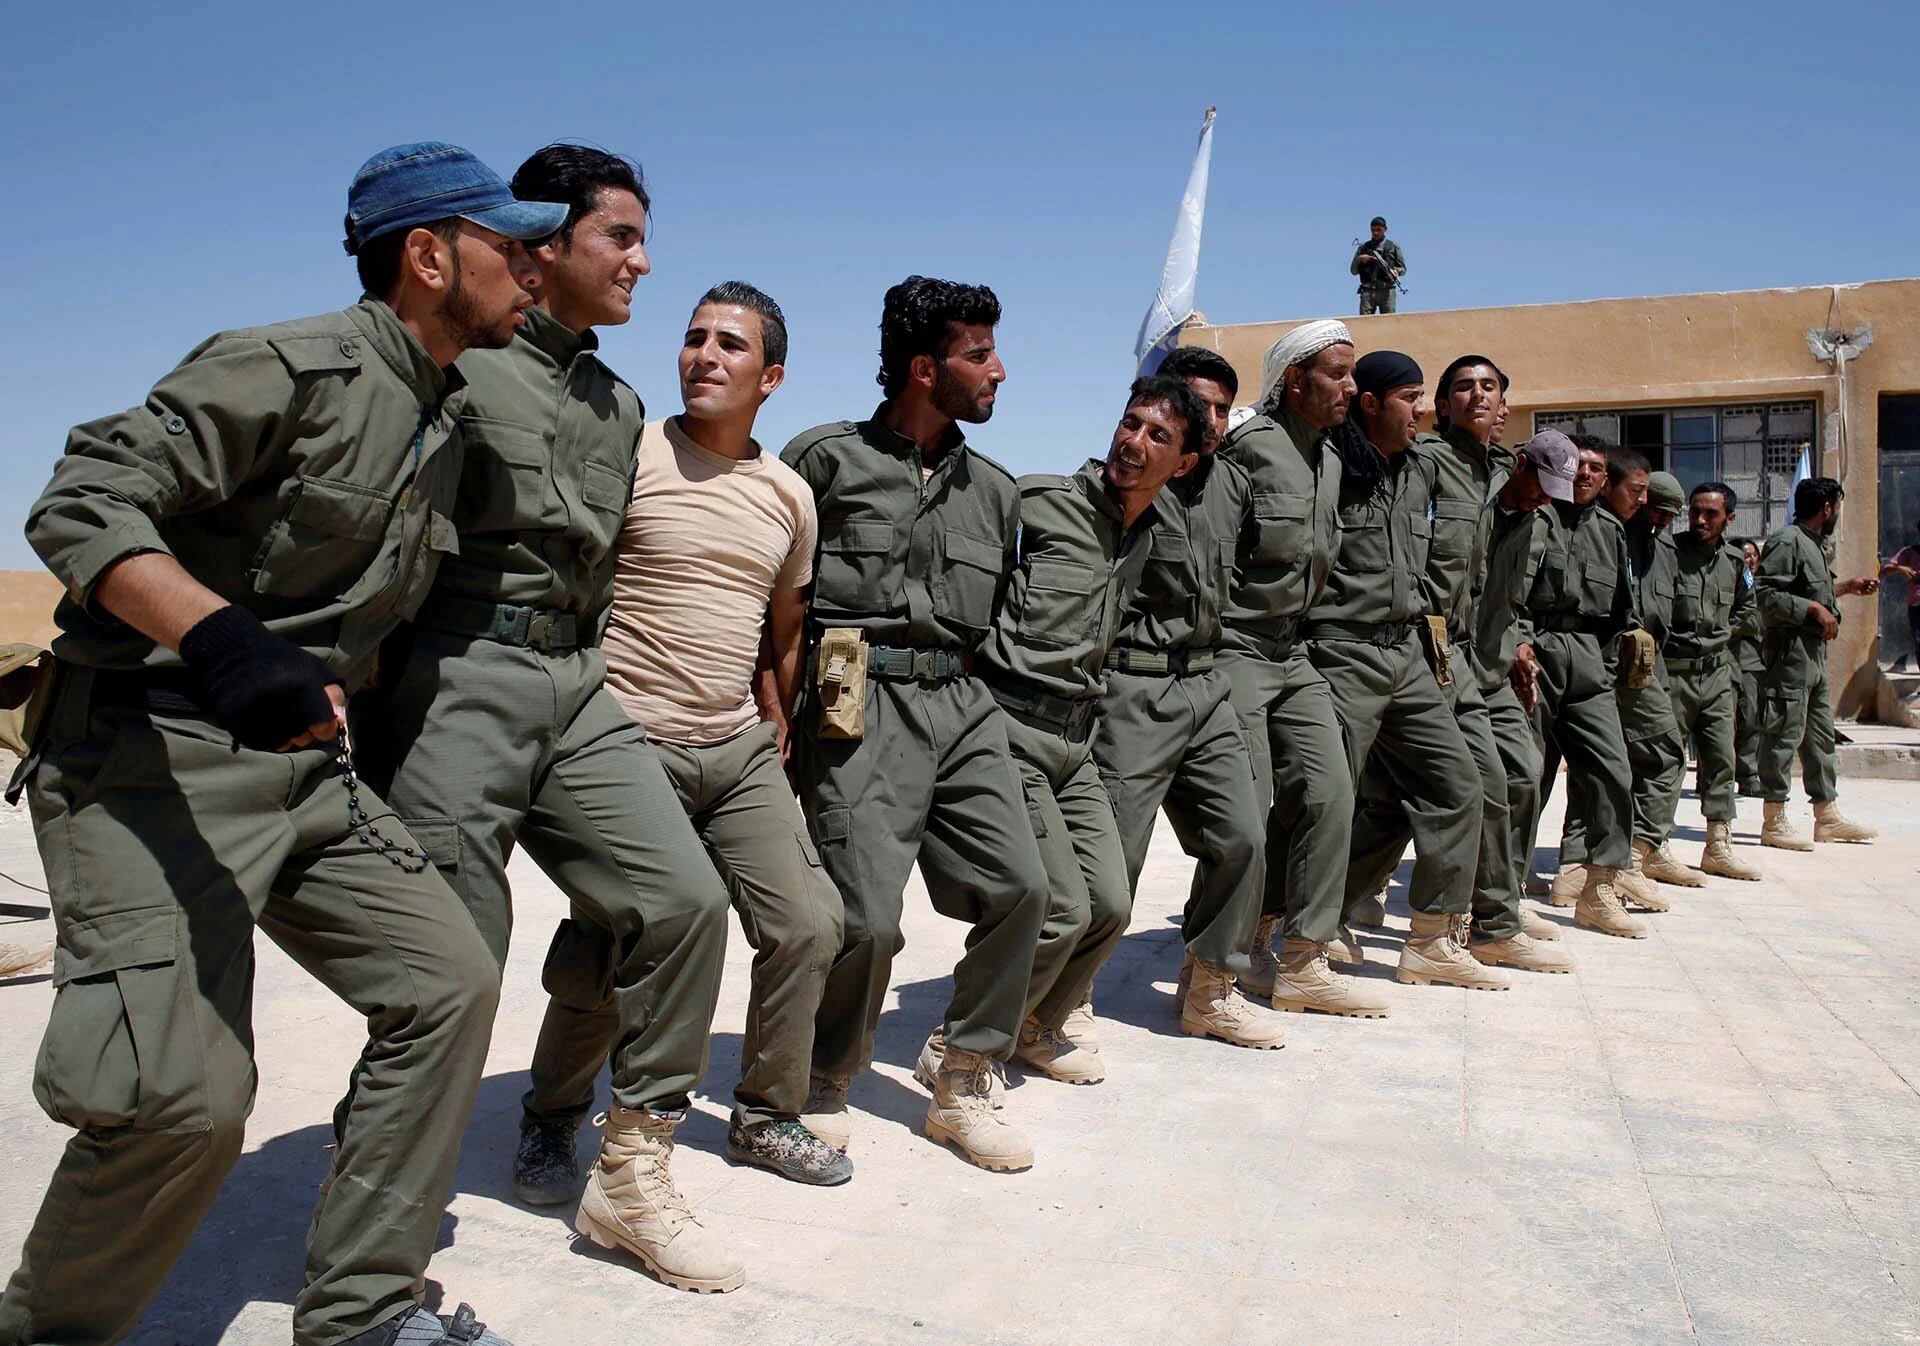 Los graduados de una fuerza de policía estadounidense, que esperan ser desplegados en Raqqa, bailan durante una ceremonia de egreso cerca del pueblo de Ain Issa, al norte de Raqqa, Siria